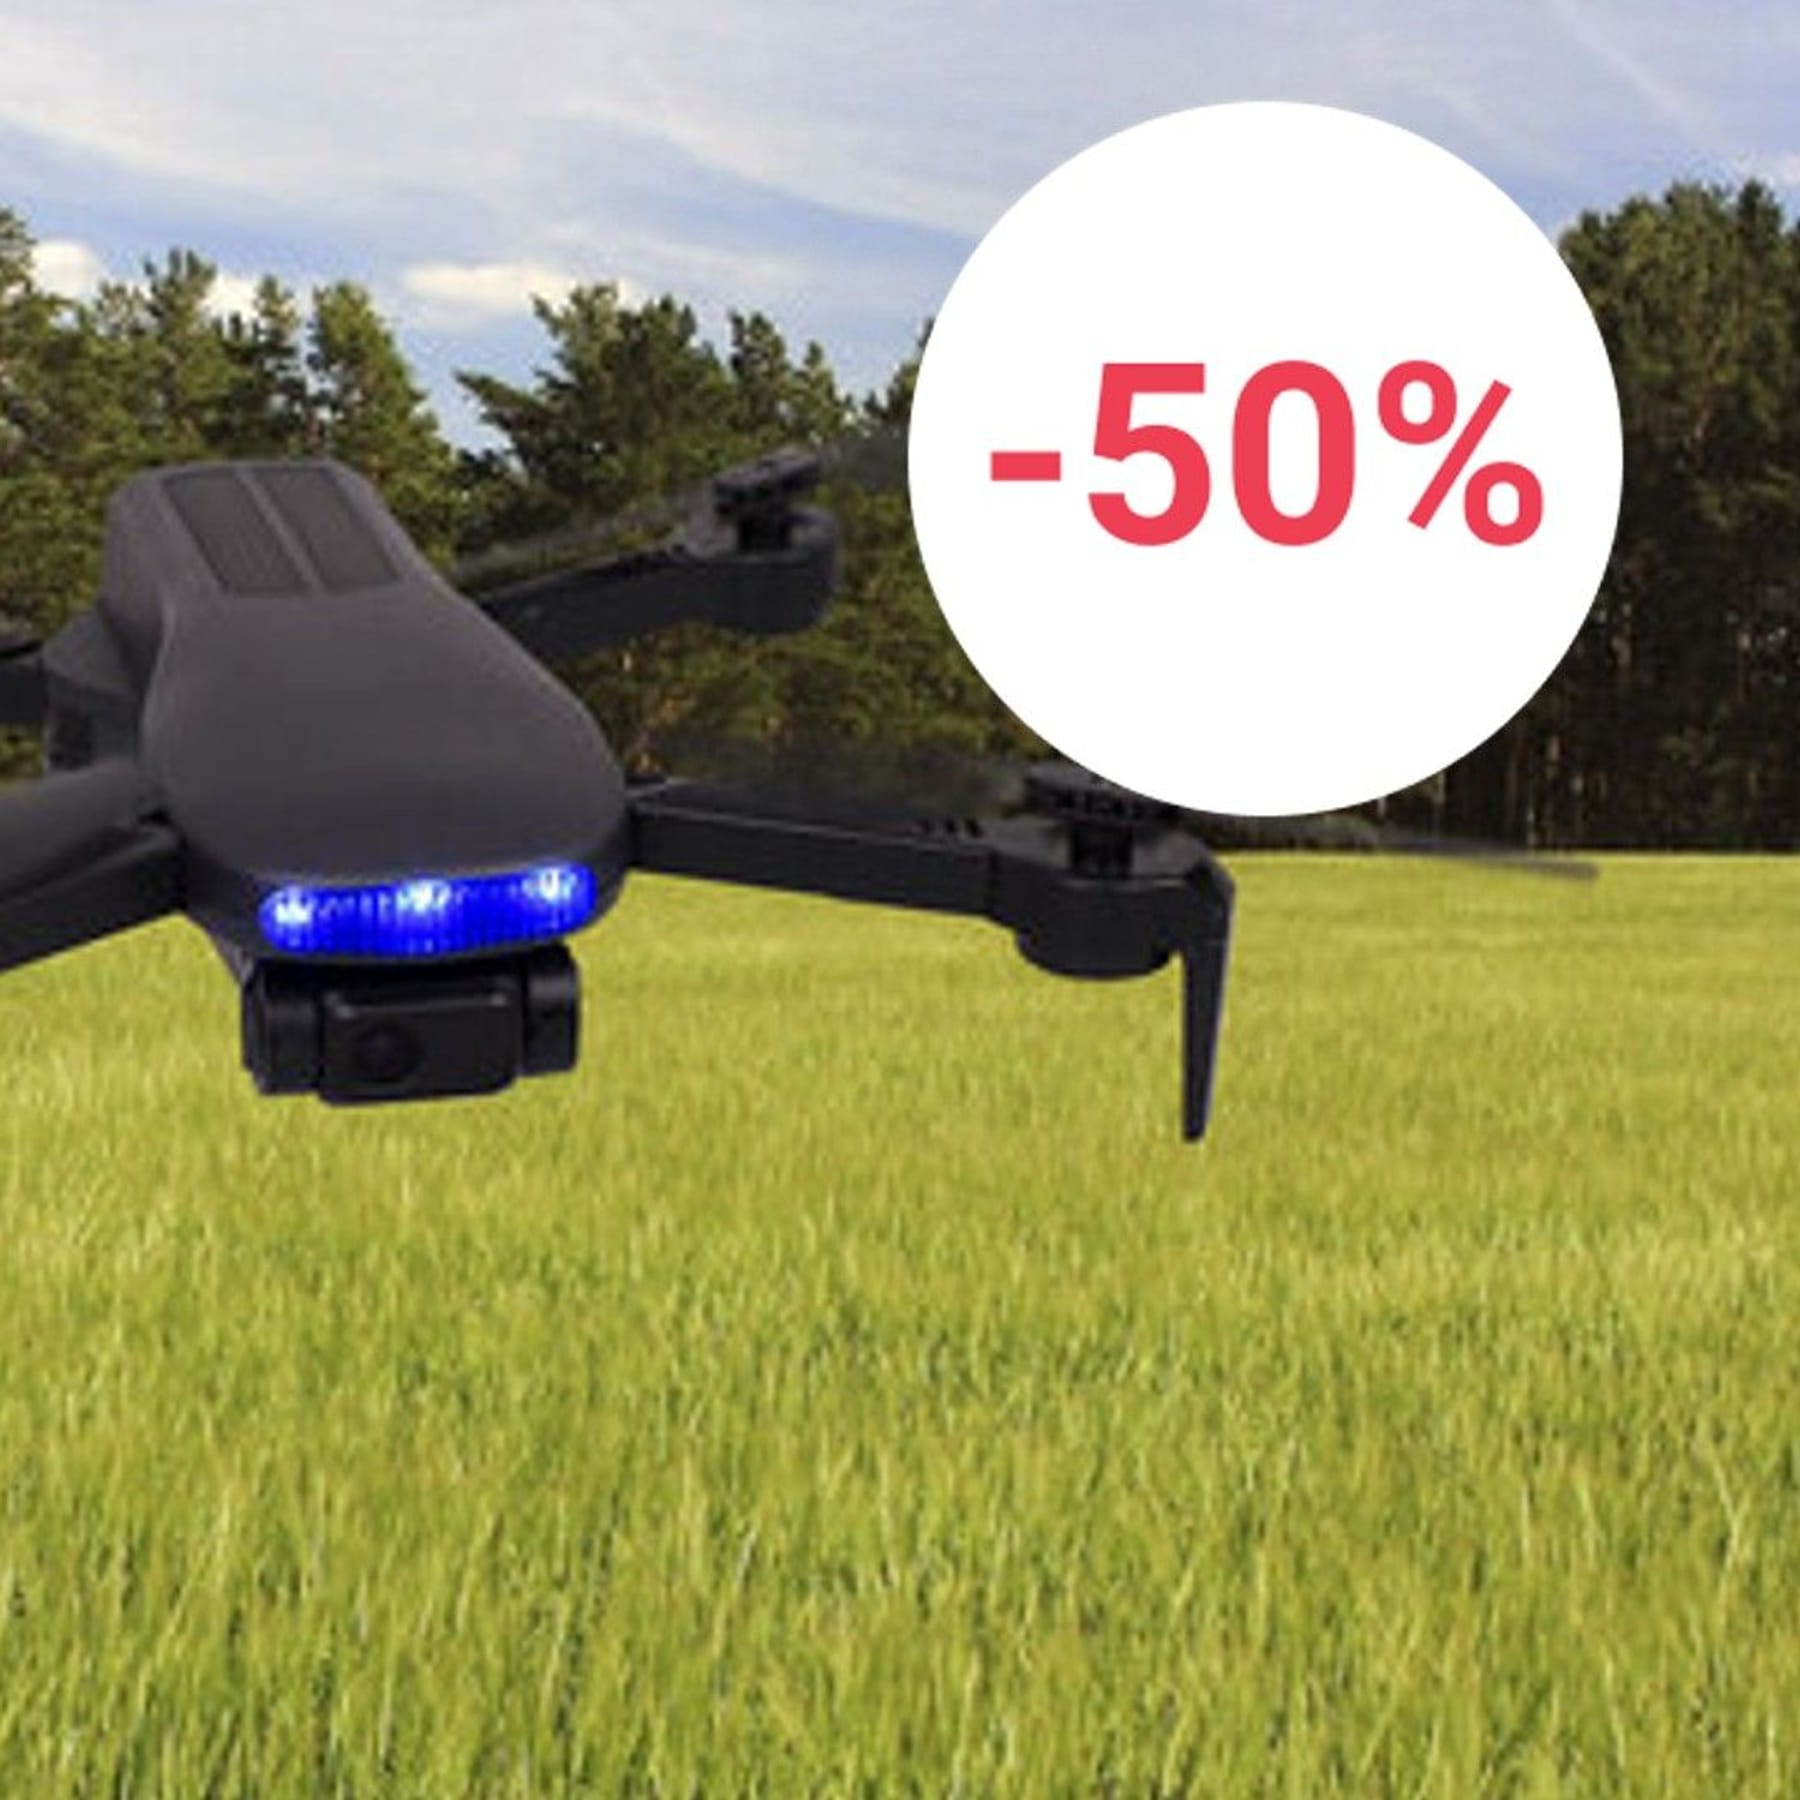 Discounter-Deal im Check: Aldi-Drohne für 70 Euro – Lohnt sich der Kauf?